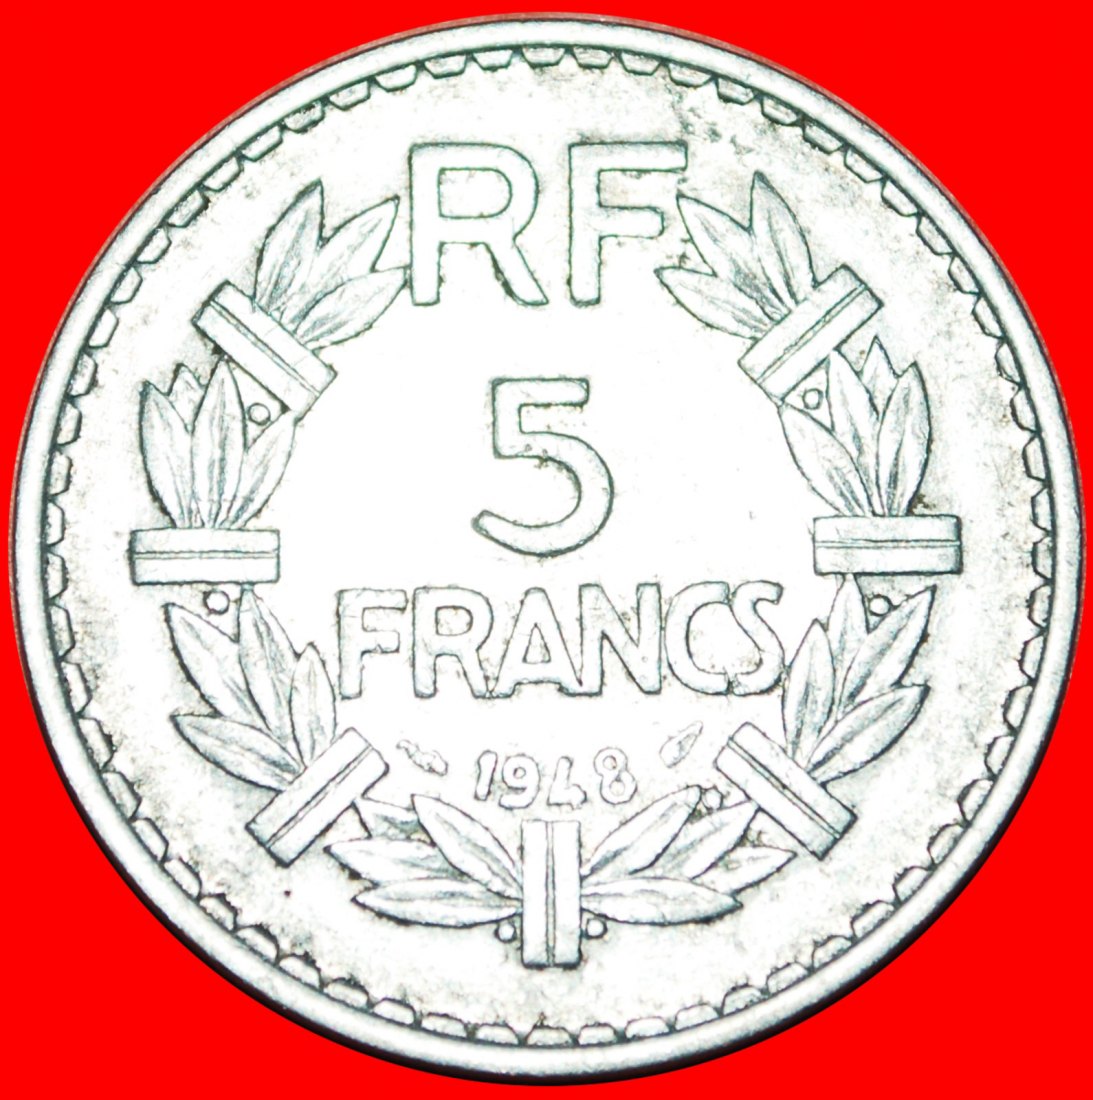  • GESCHLOSSEN 9: FRANKREICH ★ 5 FRANCS 1948 RARITÄT! OHNE VORBEHALT!   